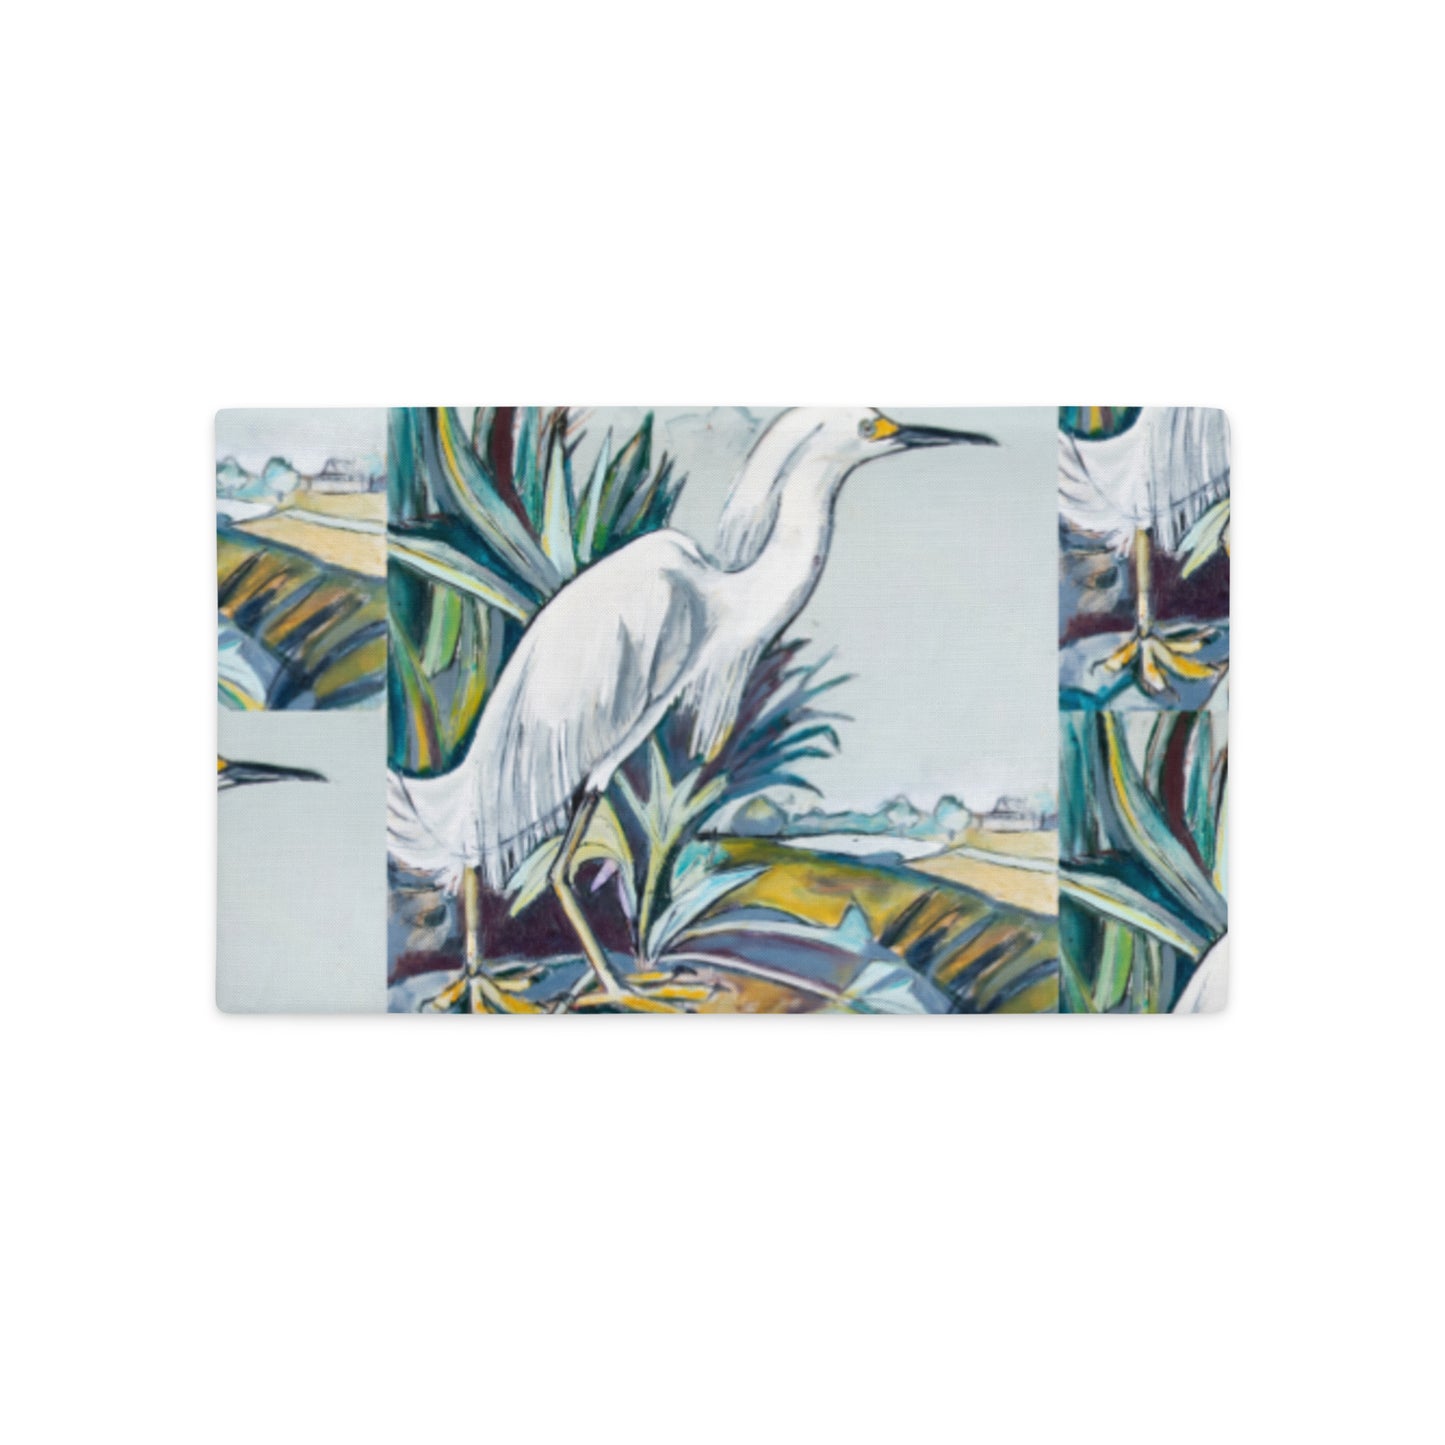 Snowy White Egret Premium Pillow Case